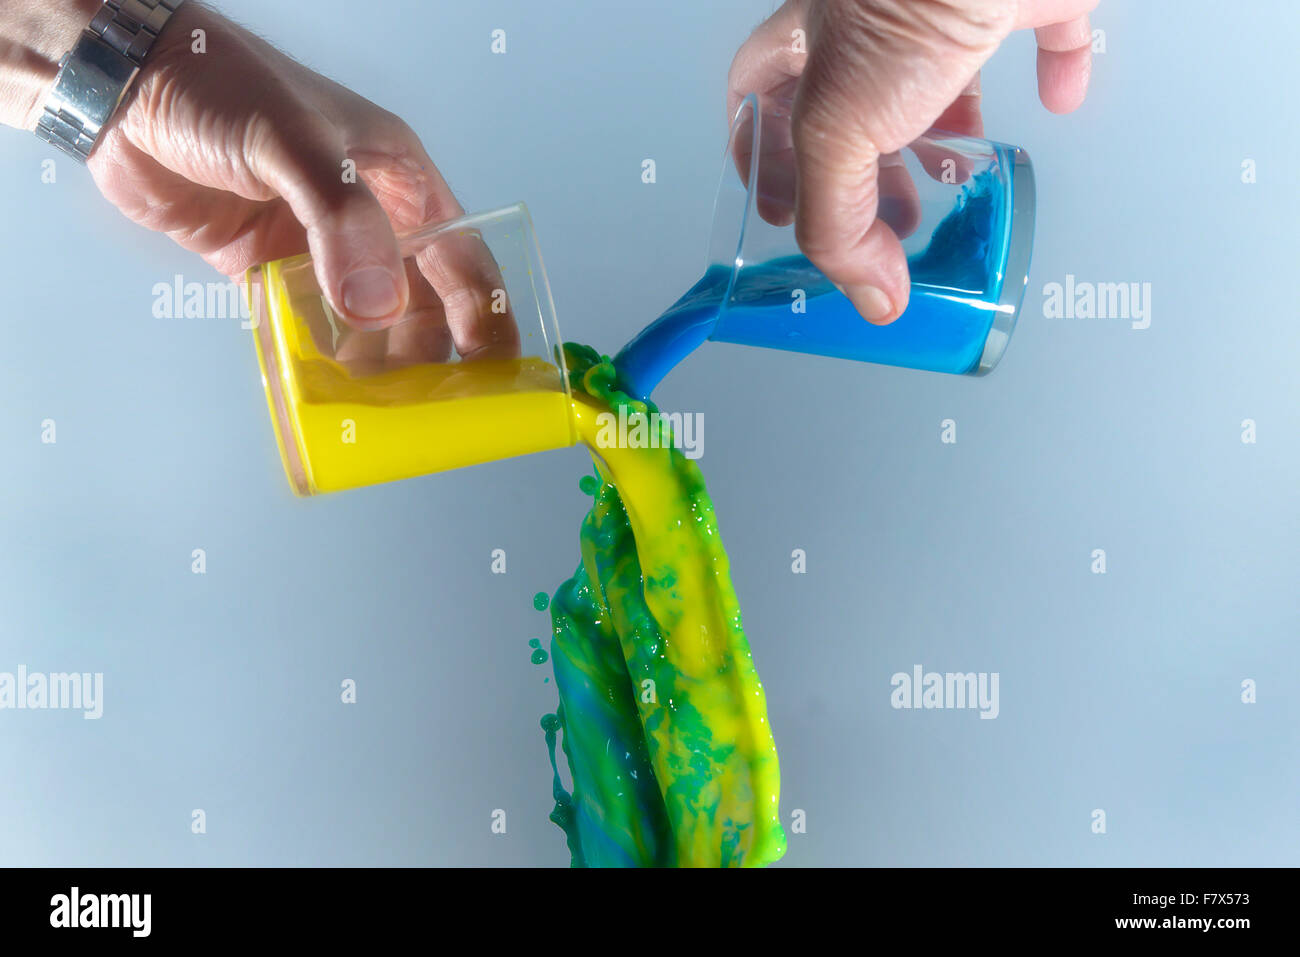 Le mélange liquide jaune et bleu pour obtenir un liquide vert Photo Stock -  Alamy